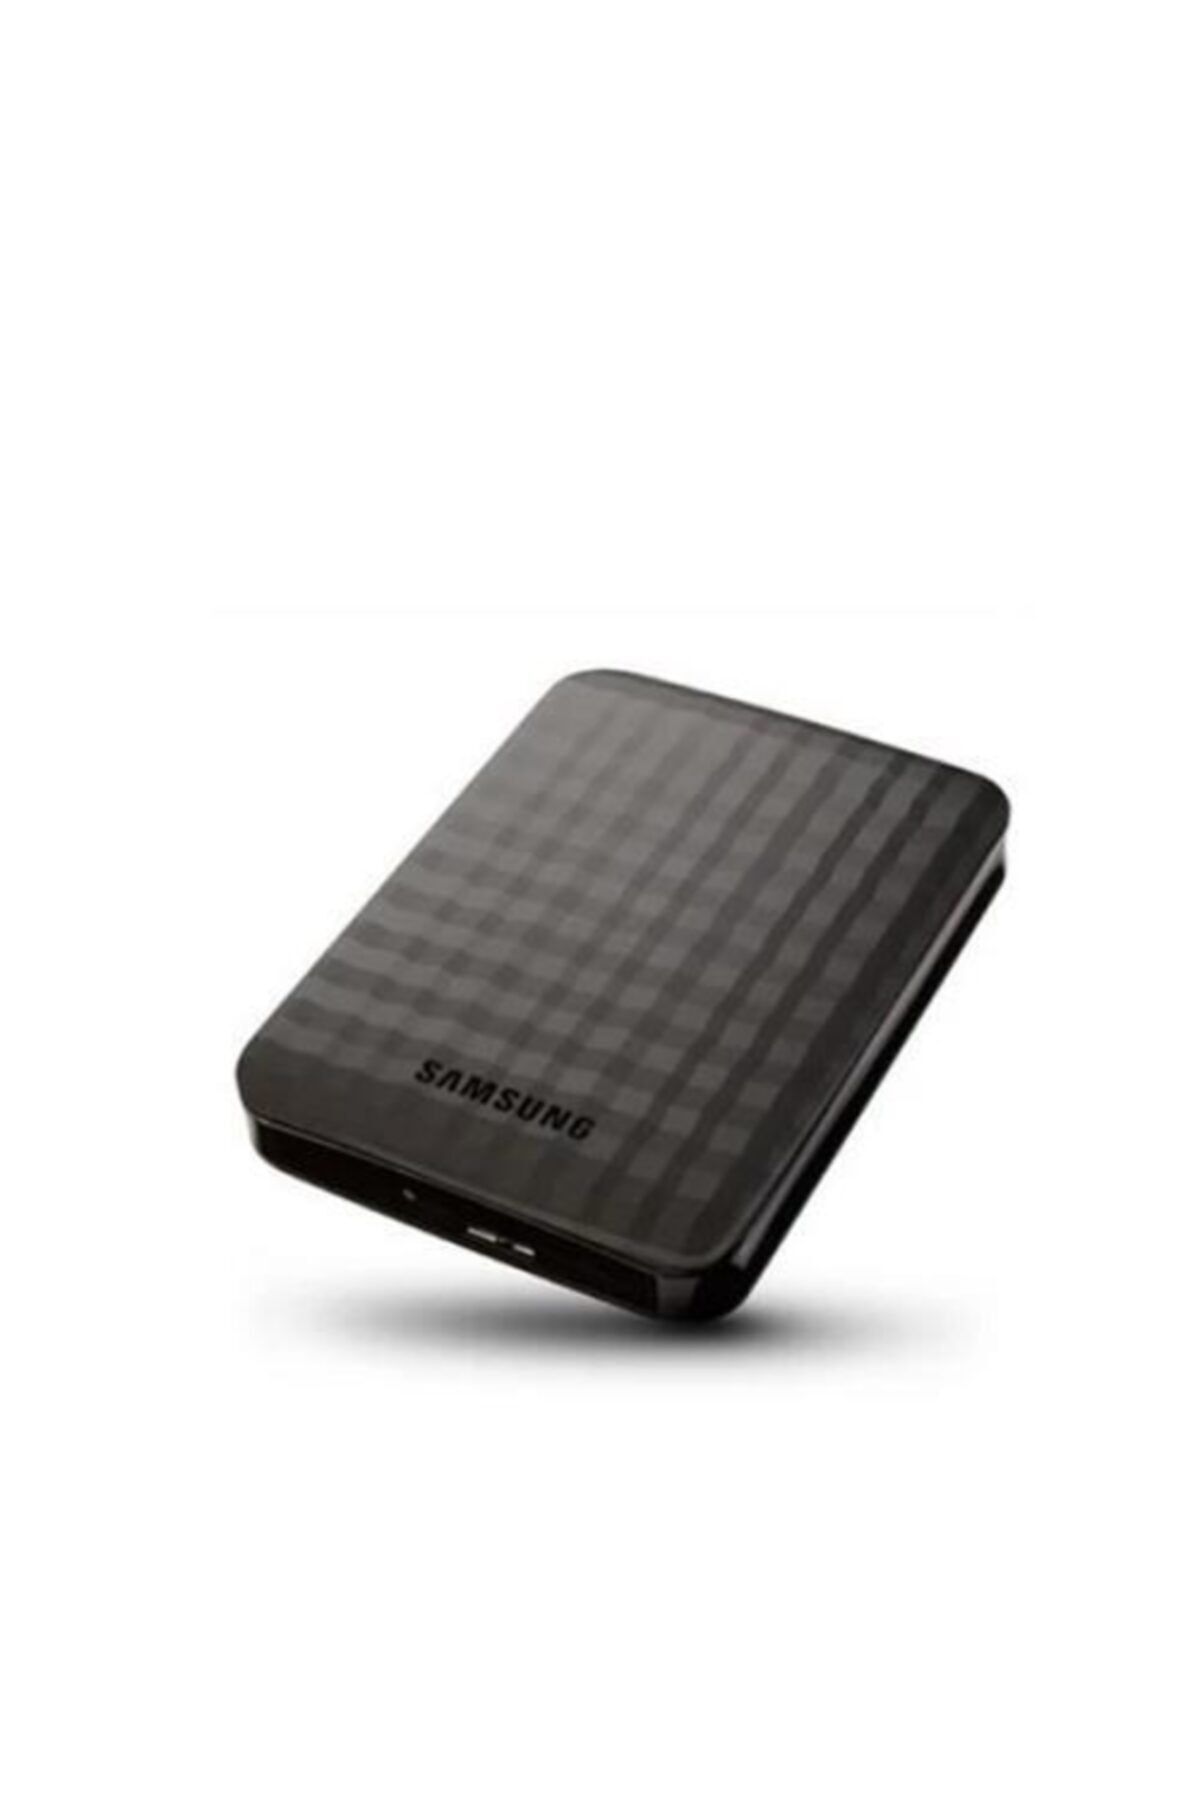 Samsung M3 Stshx-m320tcb 320 Gb 2.5" Usb 3.0 Taşınabilir Disk